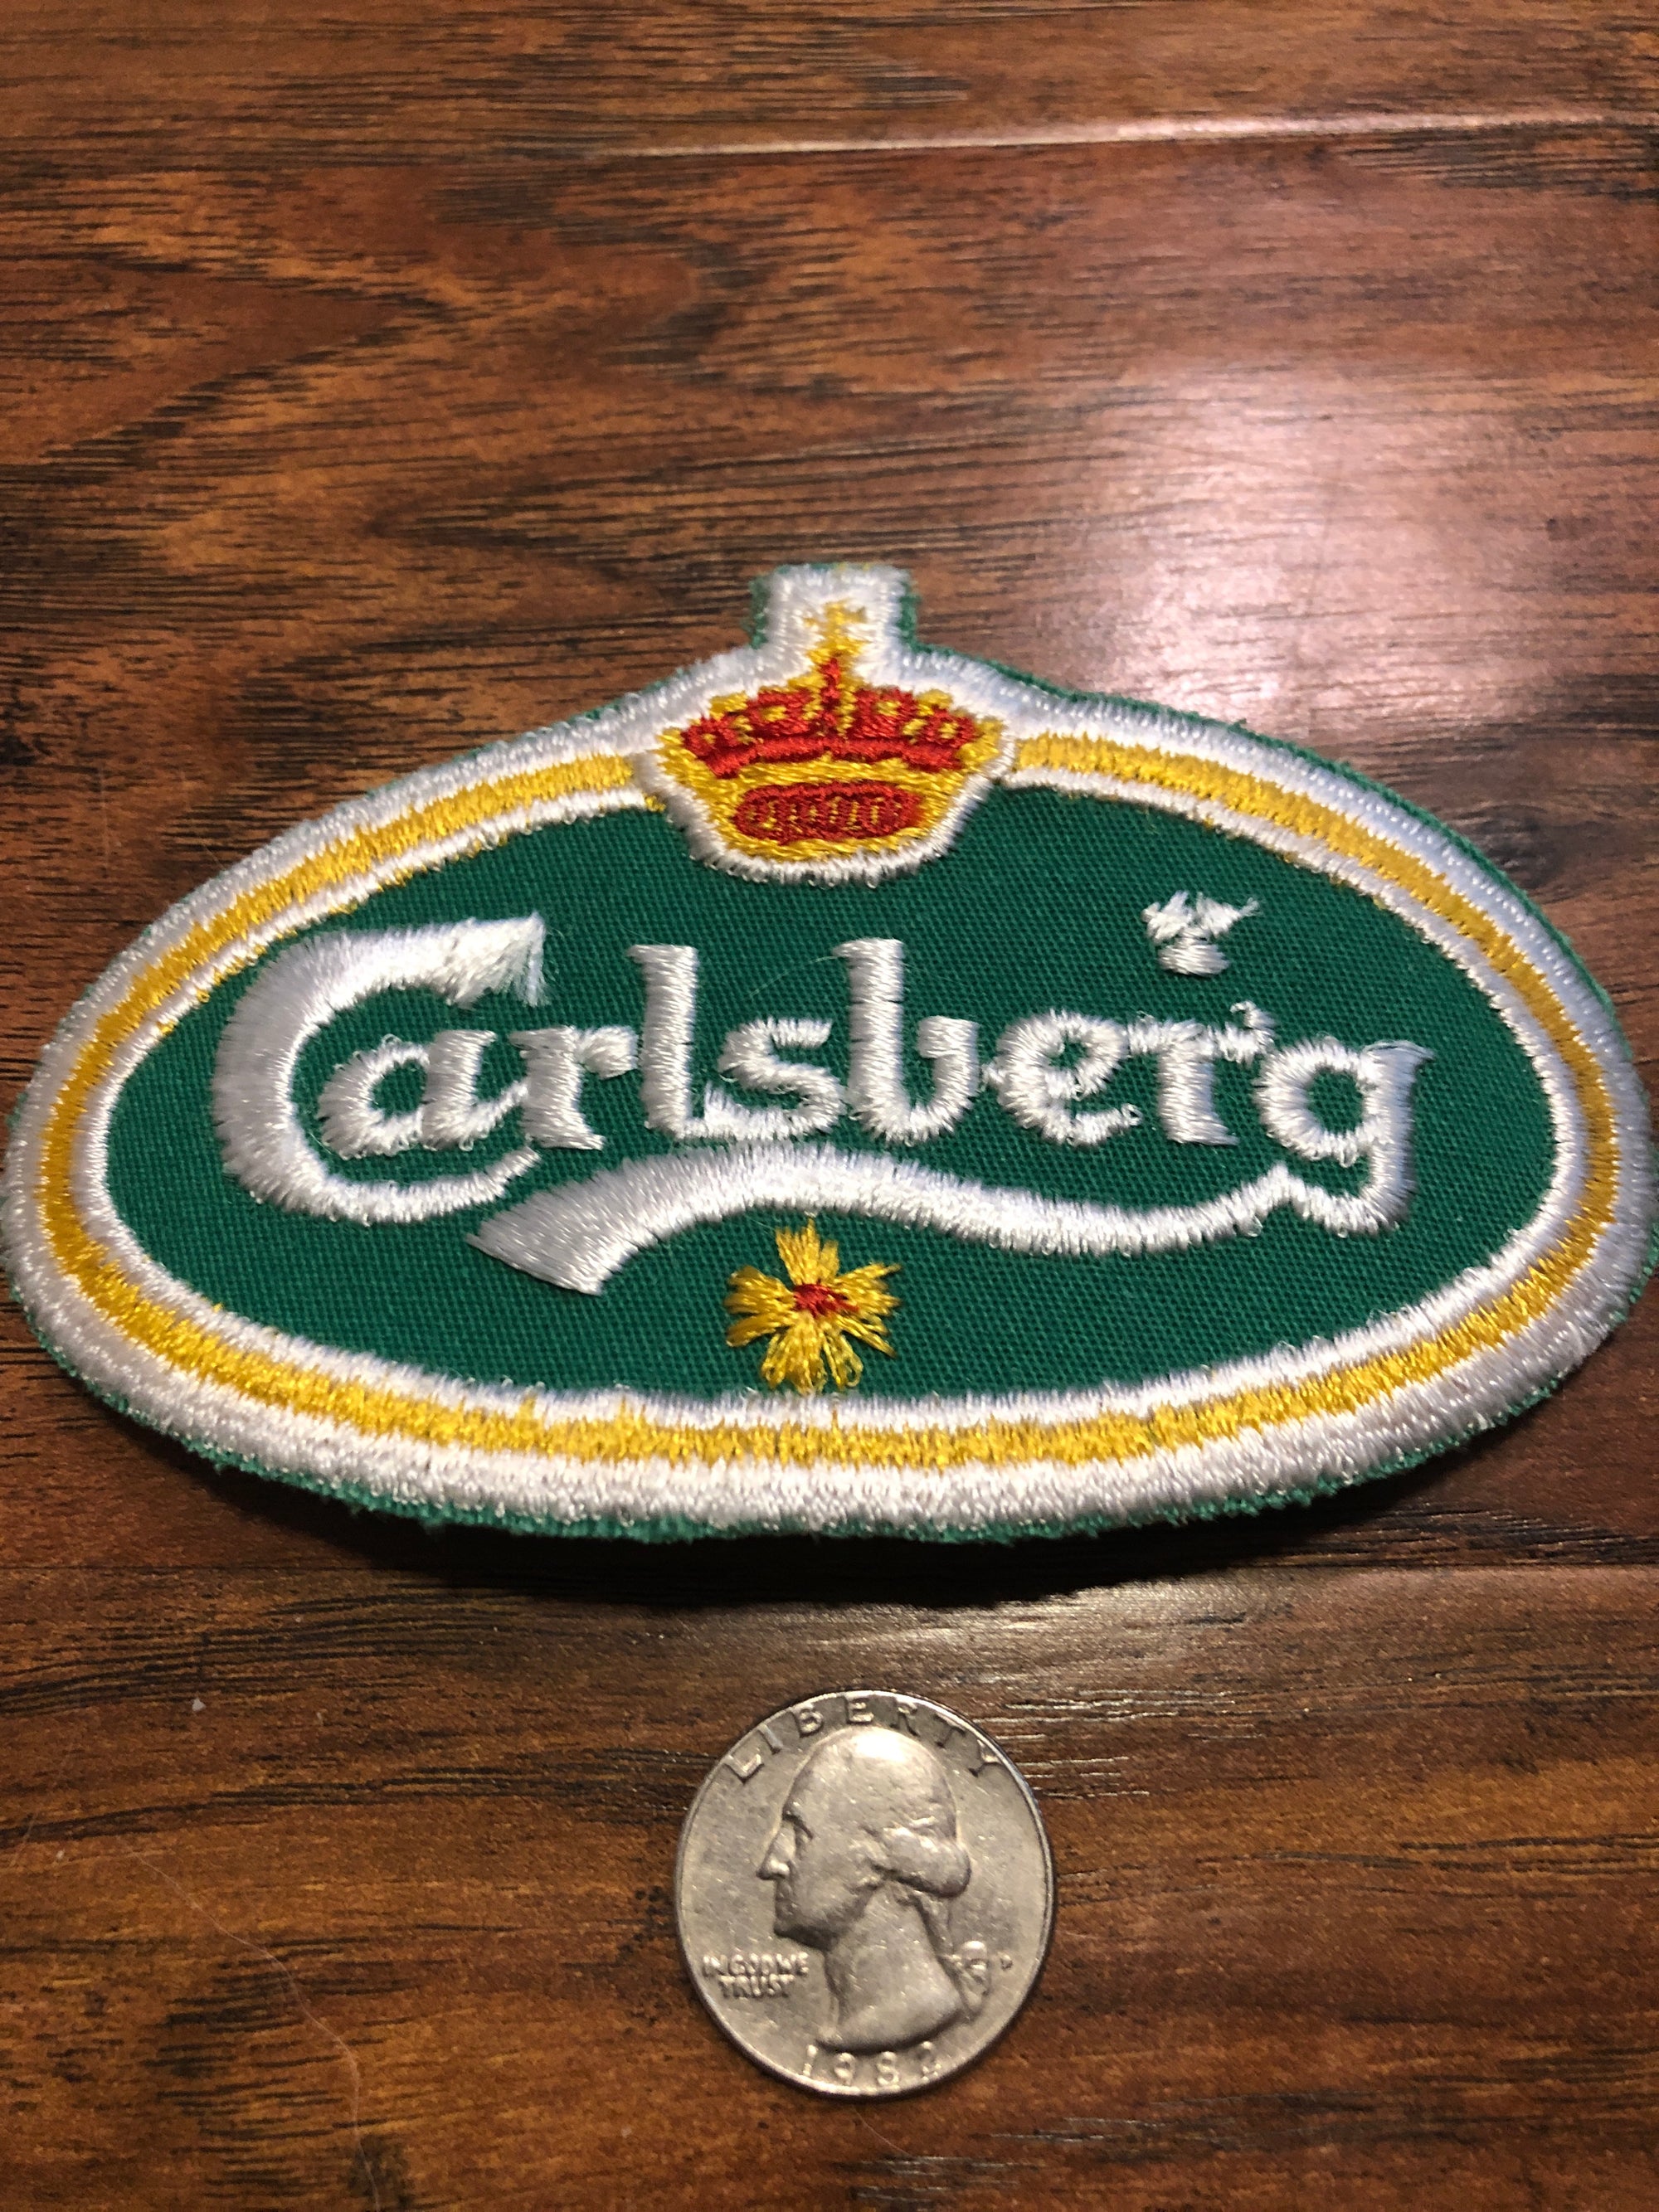 Vintage Carlsberg